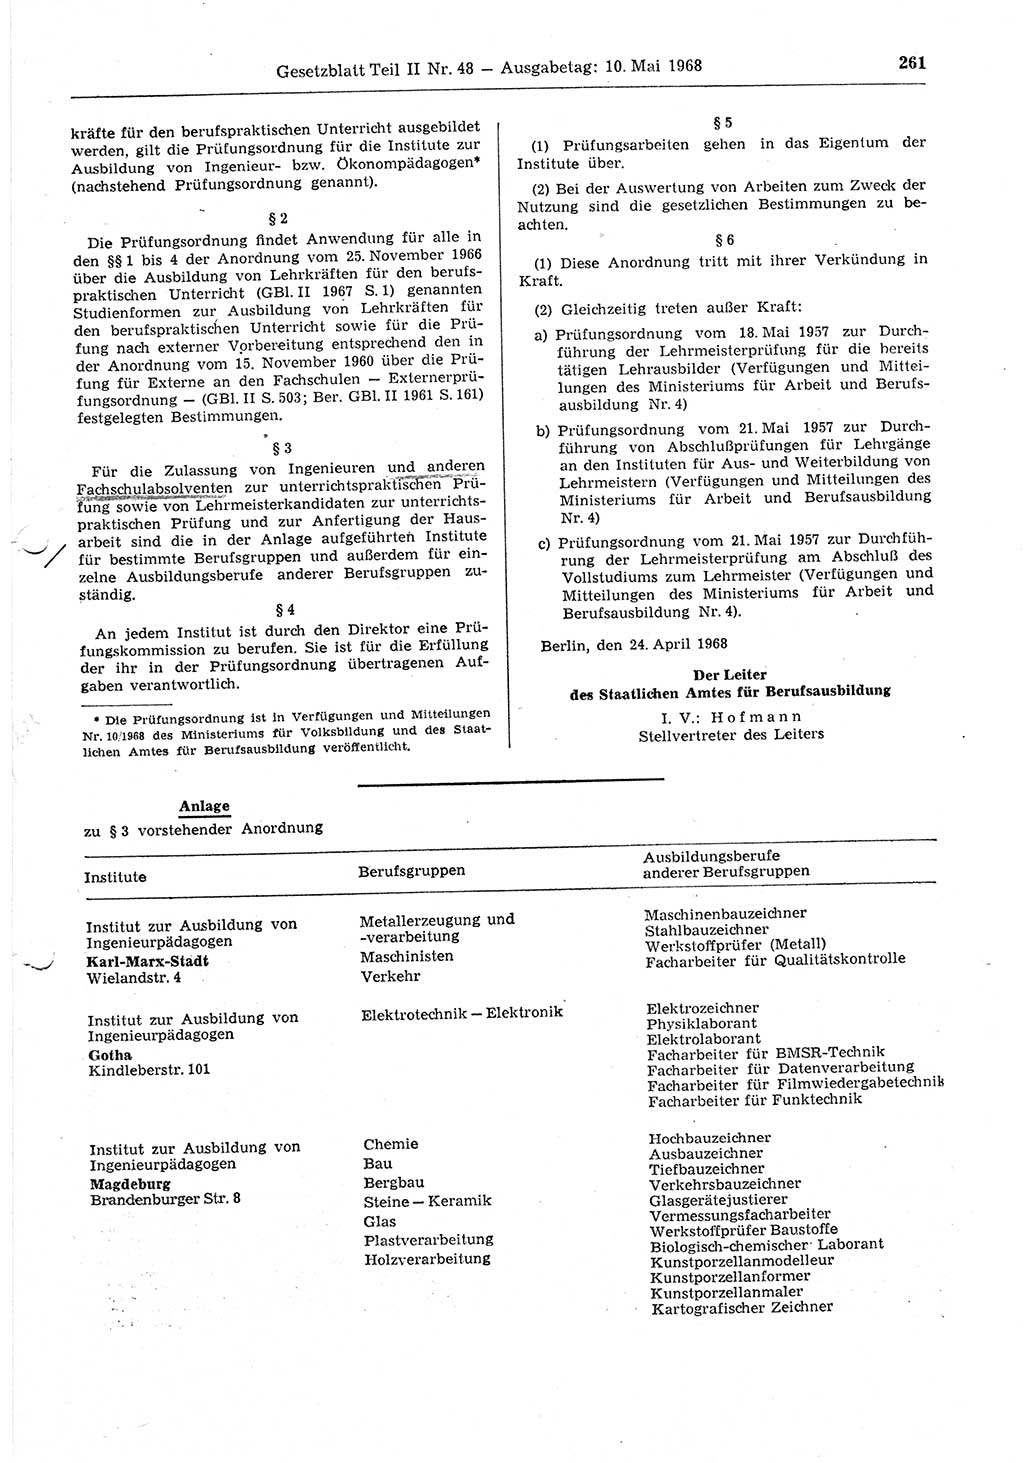 Gesetzblatt (GBl.) der Deutschen Demokratischen Republik (DDR) Teil ⅠⅠ 1968, Seite 261 (GBl. DDR ⅠⅠ 1968, S. 261)